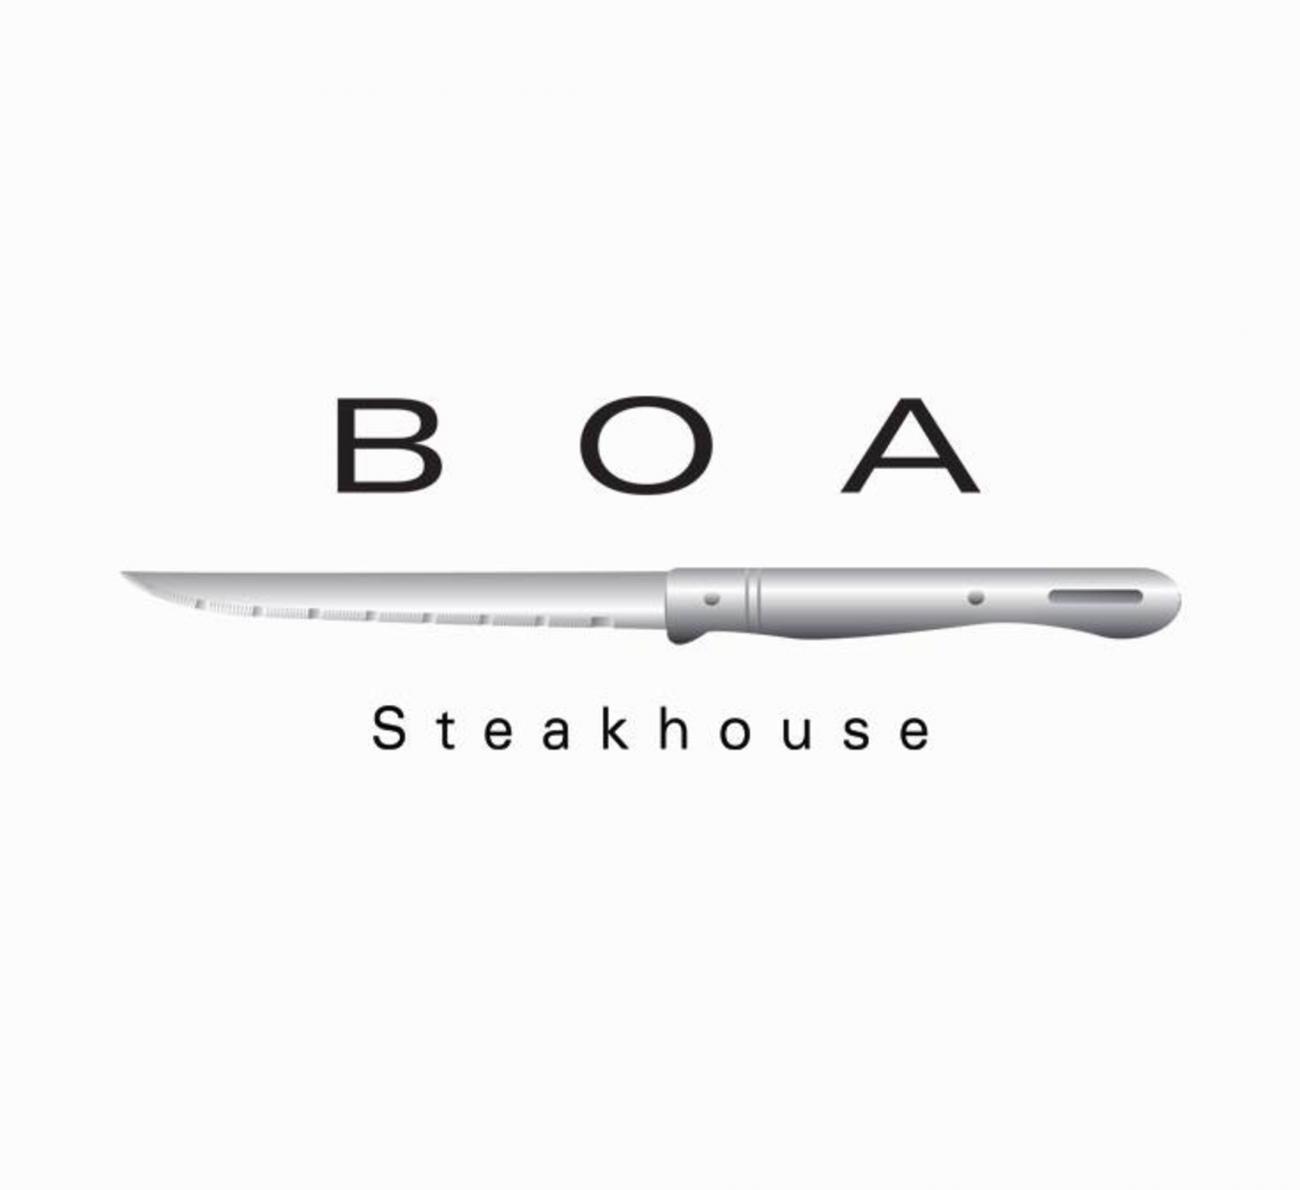 BOA logo